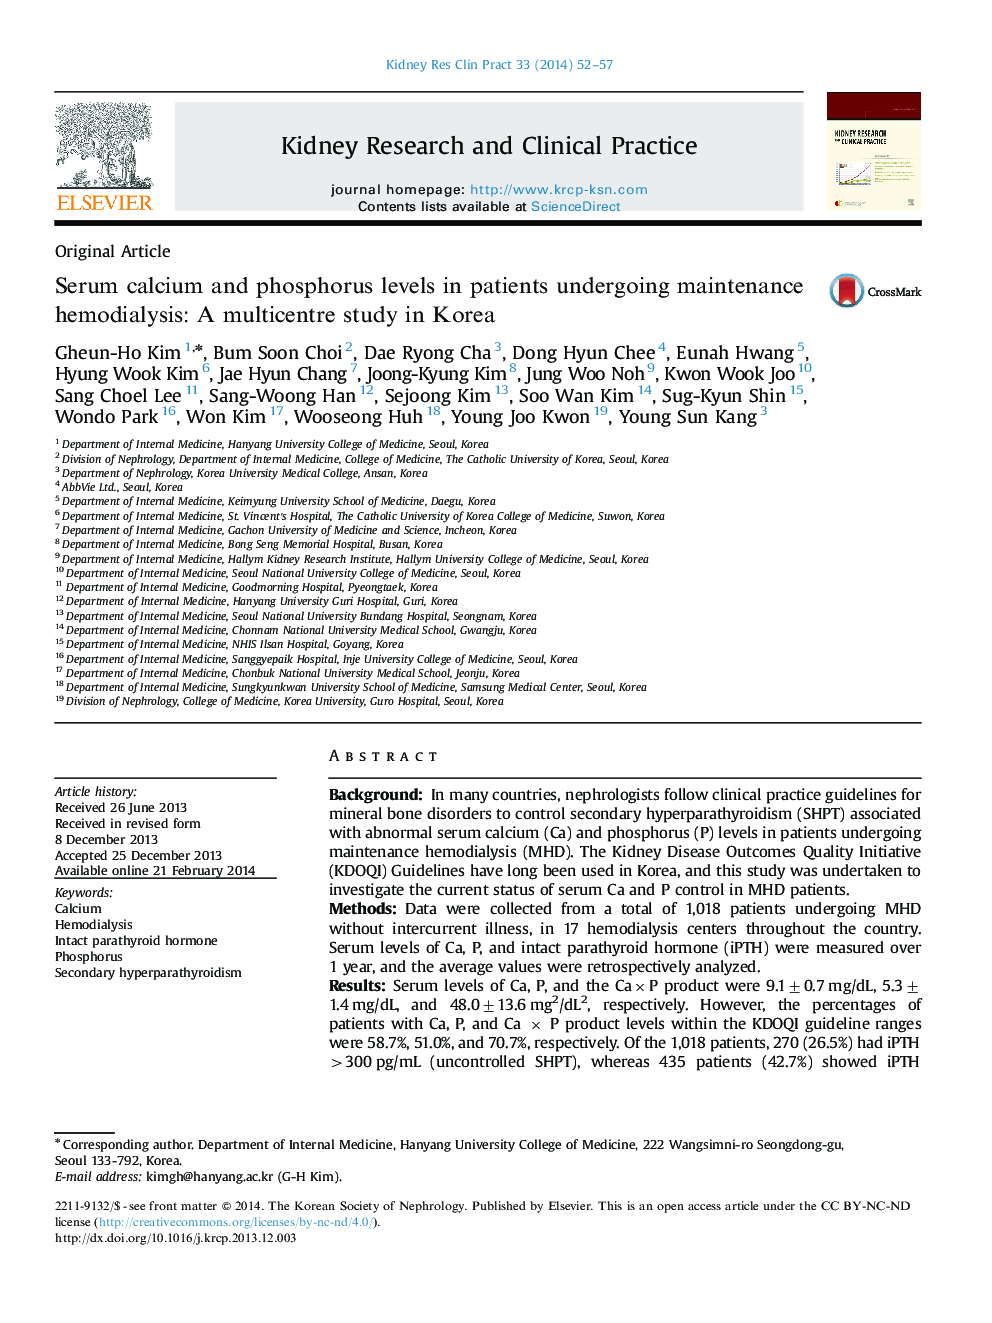 سطح سرمی کلسیم و فسفر در بیماران تحت درمان با همودیالیز: مطالعه چند مرکزی در کره 